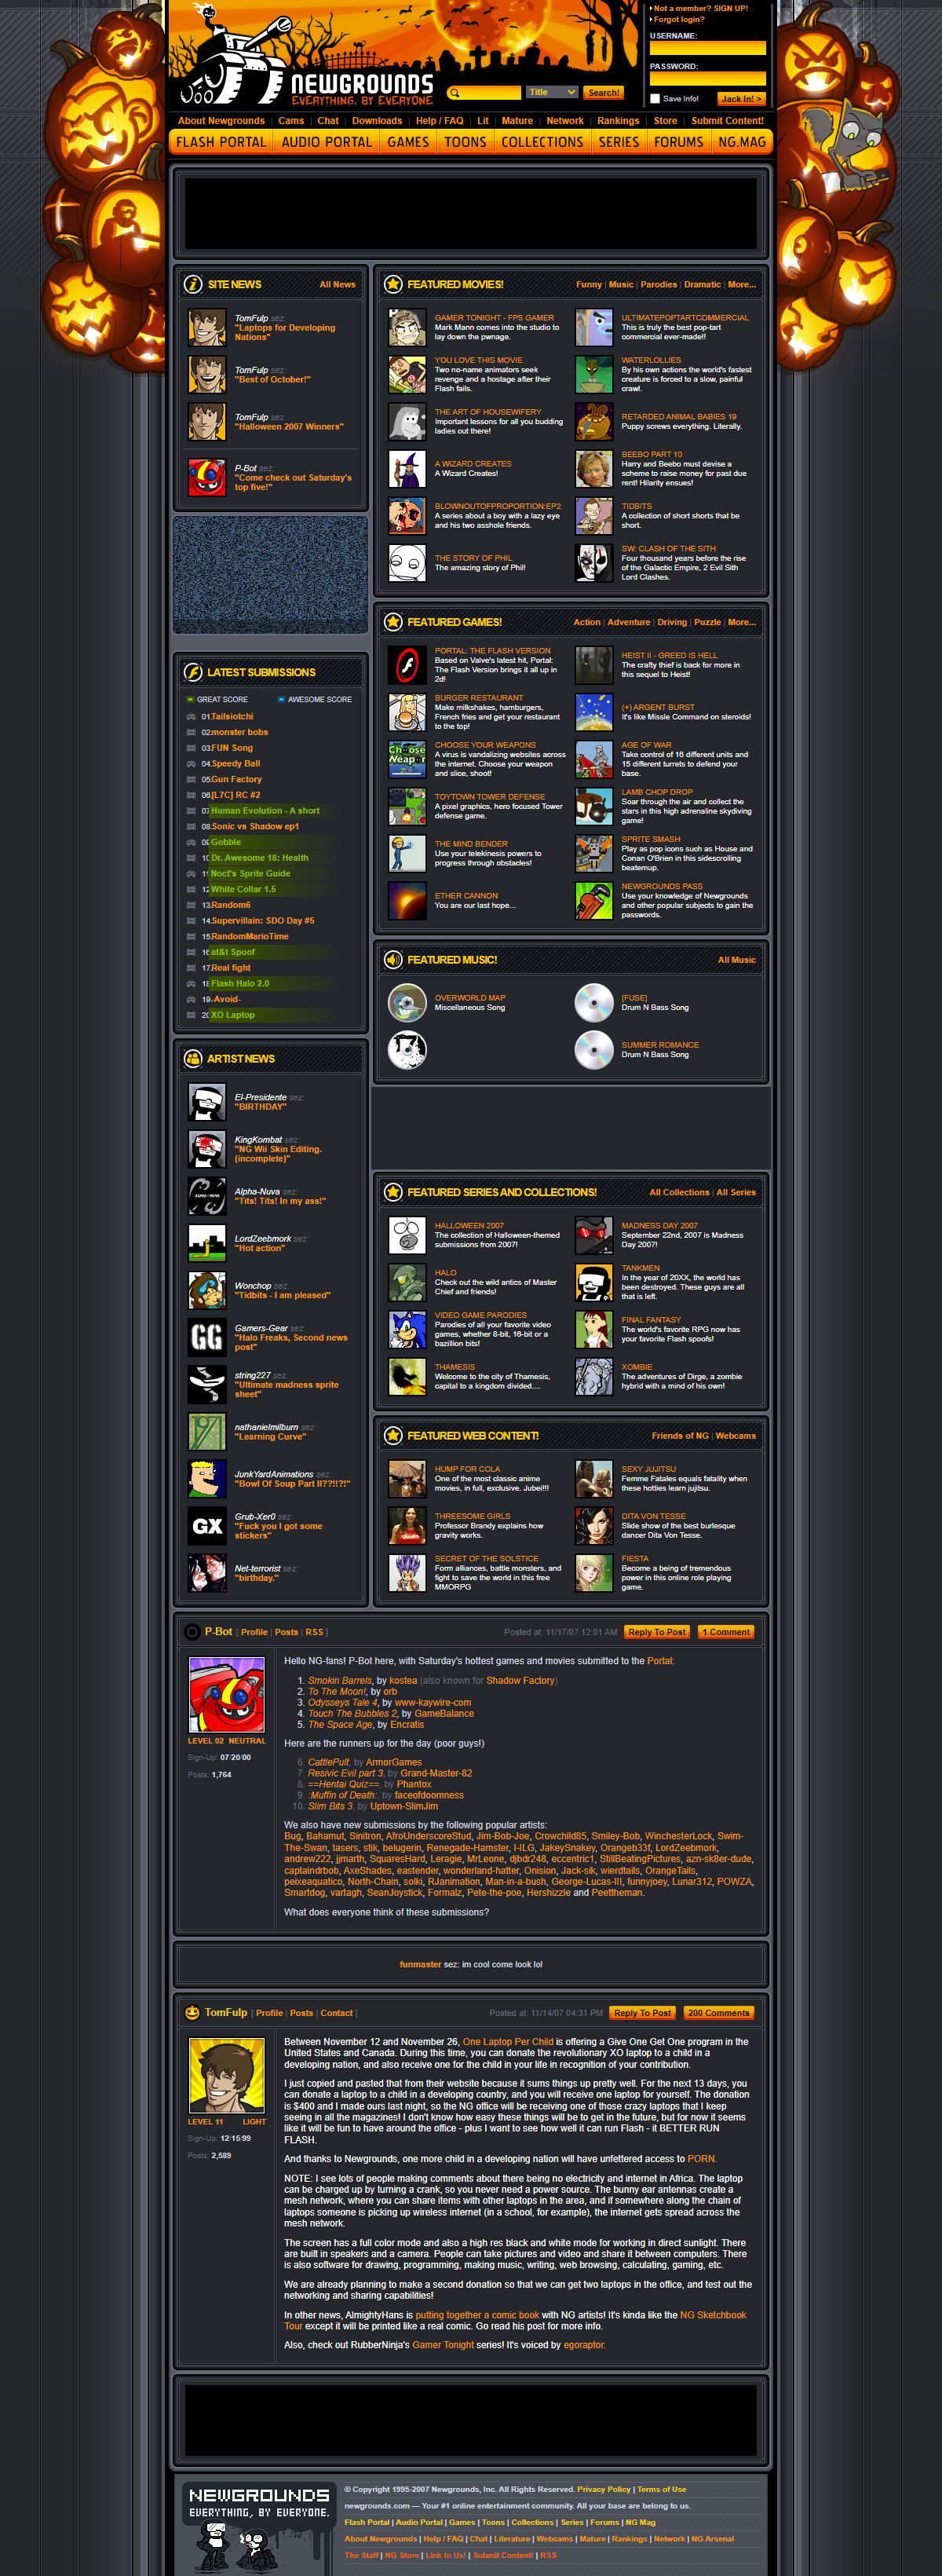 Newgrounds website in 2007